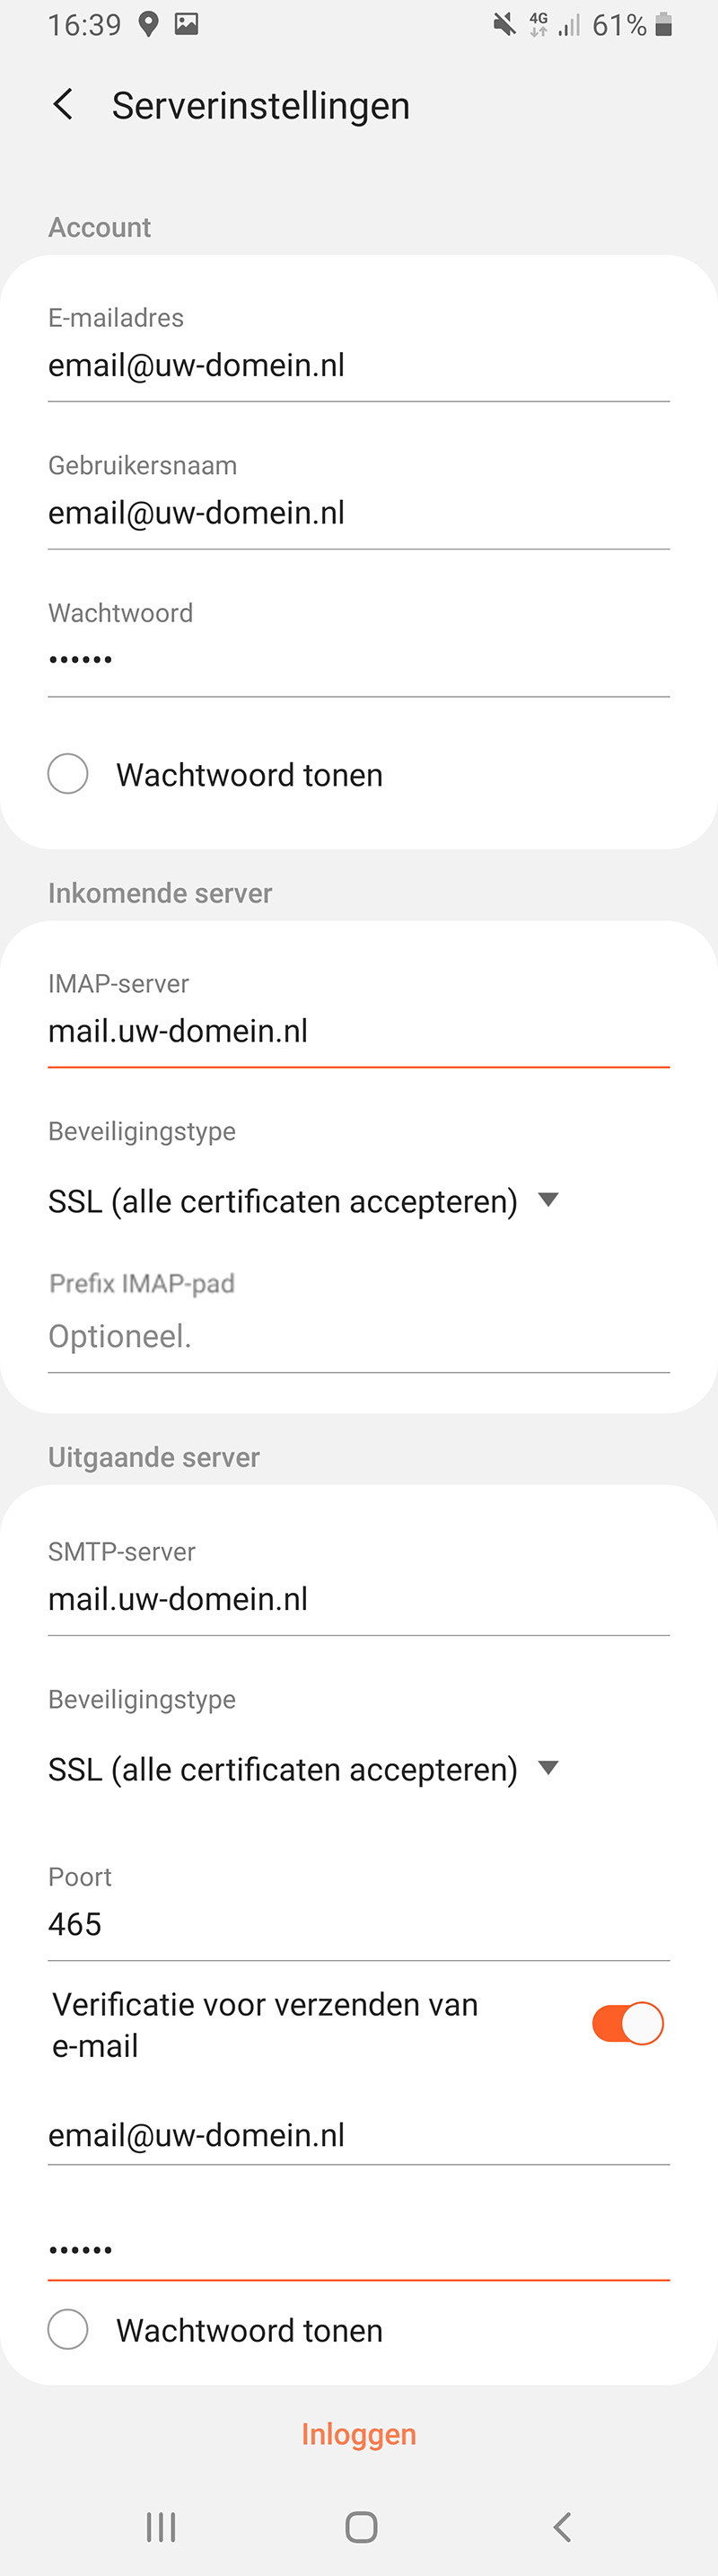 Serverinstellingen voor het instellen van een e-mailaccount